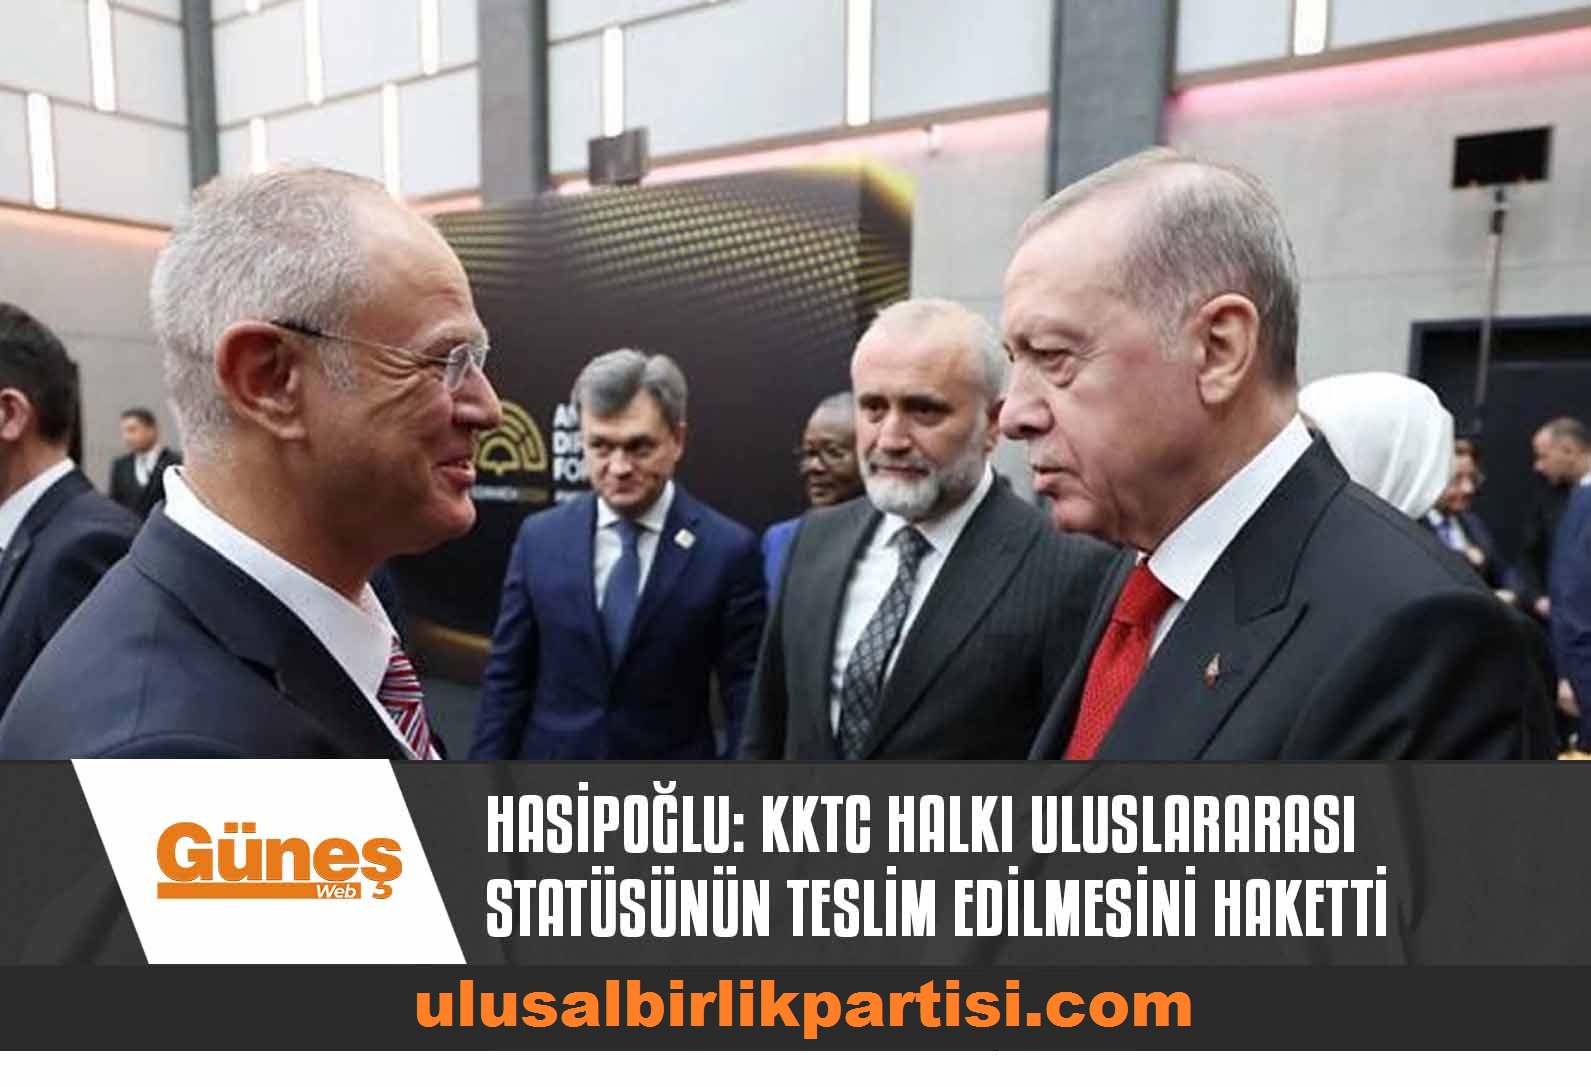 You are currently viewing Hasipoğlu: Kuzey Kıbrıs Türk Halkı uluslararası statüsünün teslim edilmesini haketti